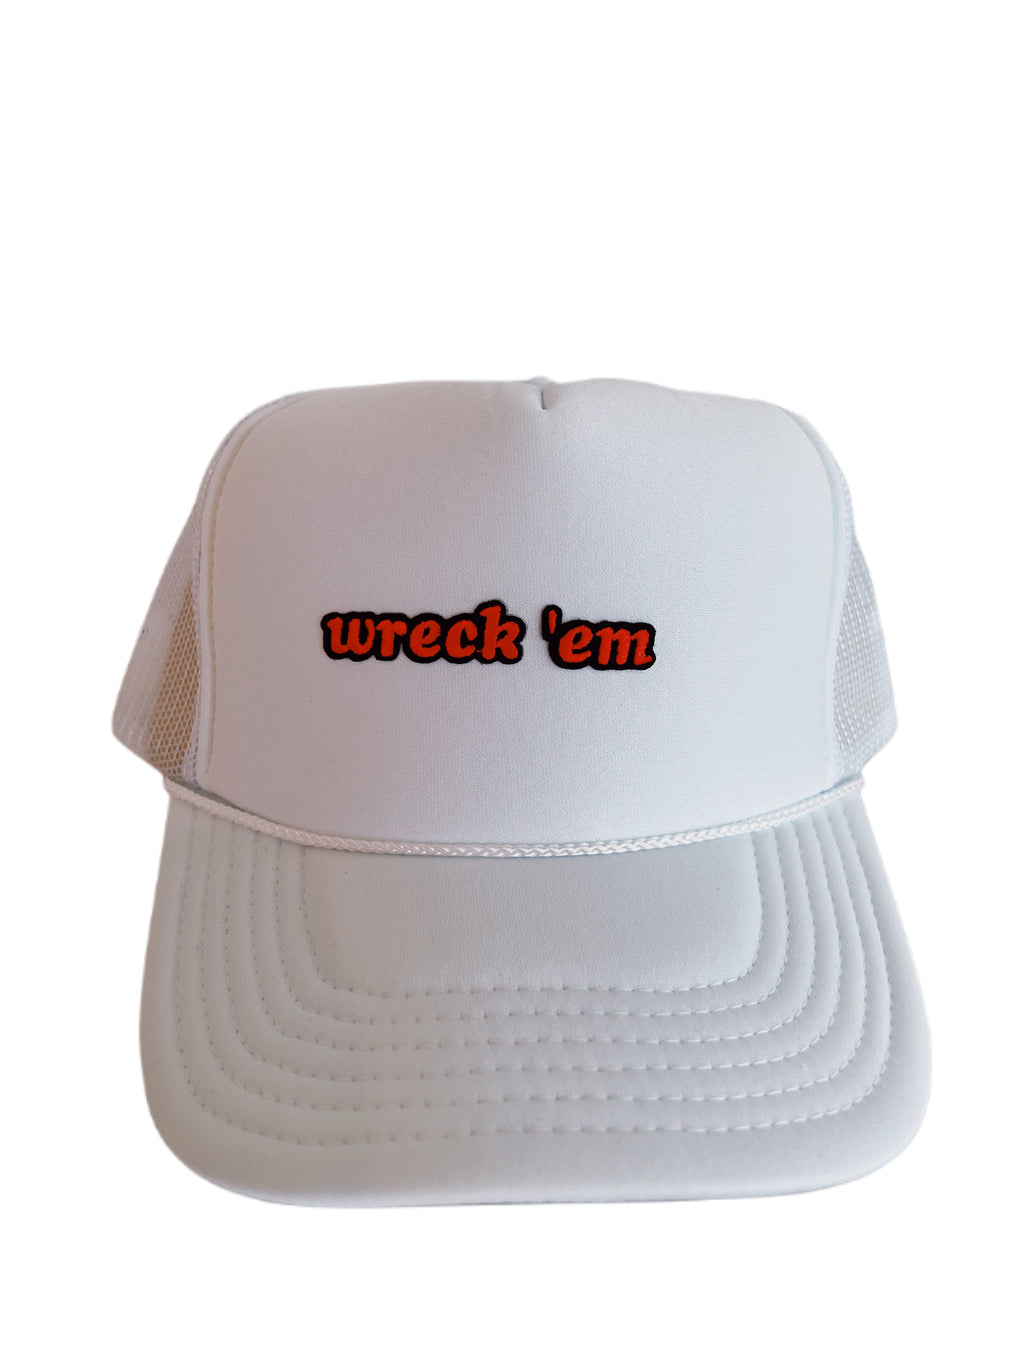 WRECK ‘EM TRUCKER HAT